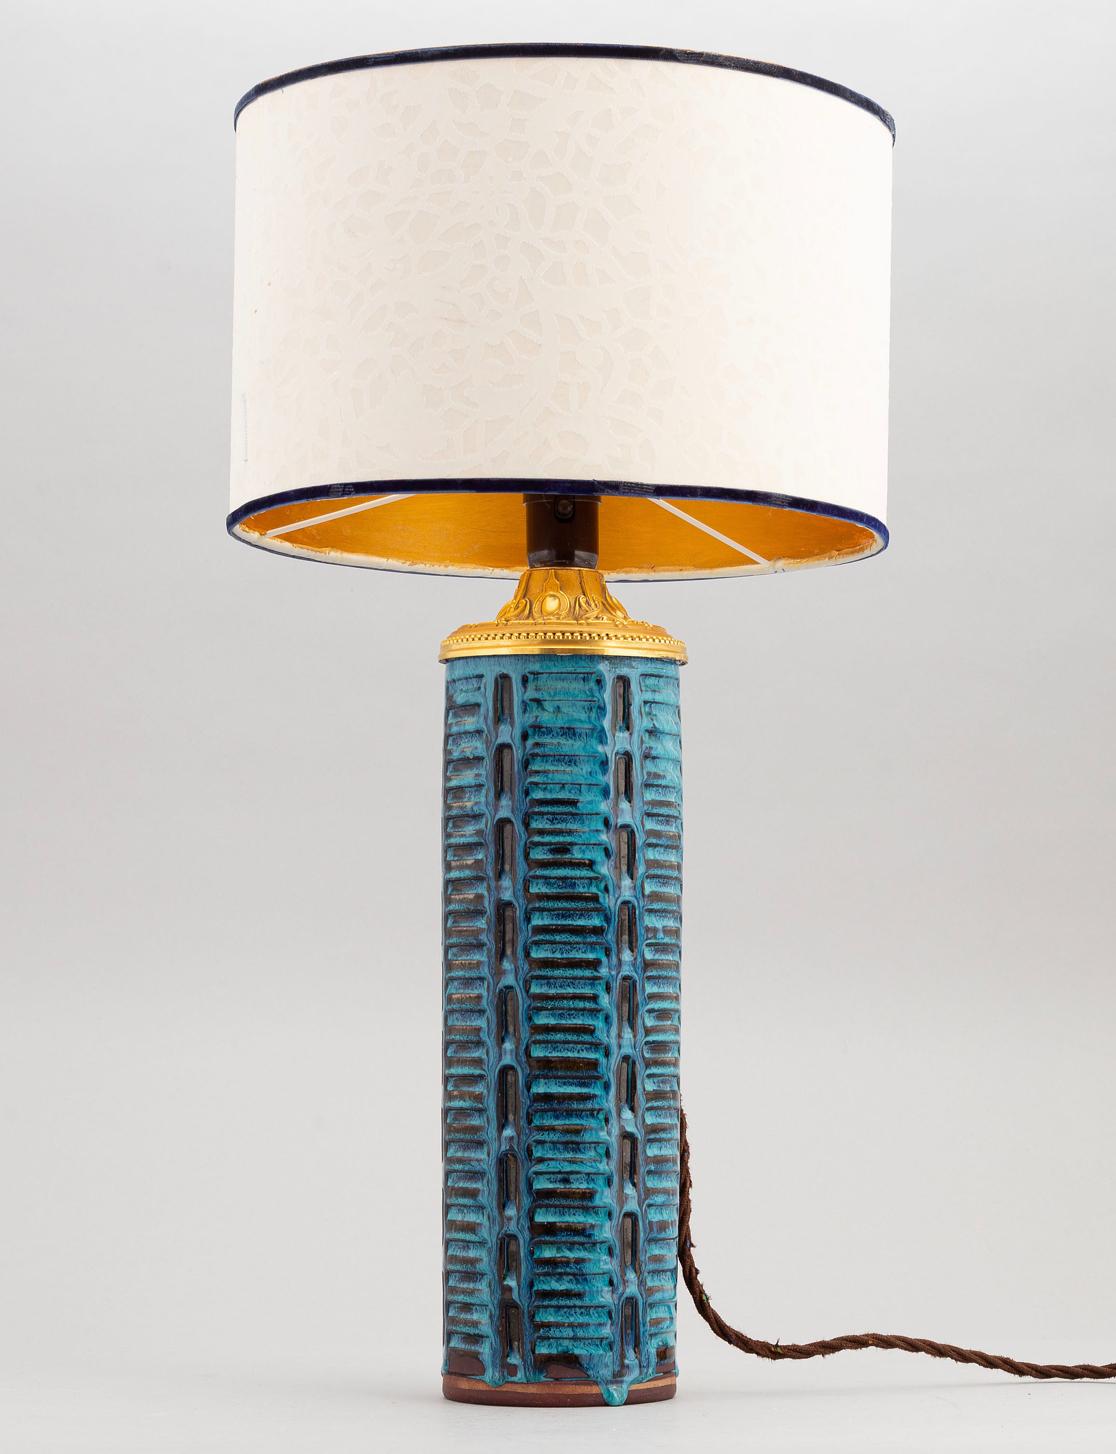 Eine Vase, jetzt eine Tischlampe. Große und seltene glasierte Steinzeugvase von Wilhelm Kåge (1889-1960) für Farsta / Gustavsberg Studiohand, umfunktioniert zur Tischlampe. Schweden, um 1950. 
Die Lampenschale ist abnehmbar. Strukturierter